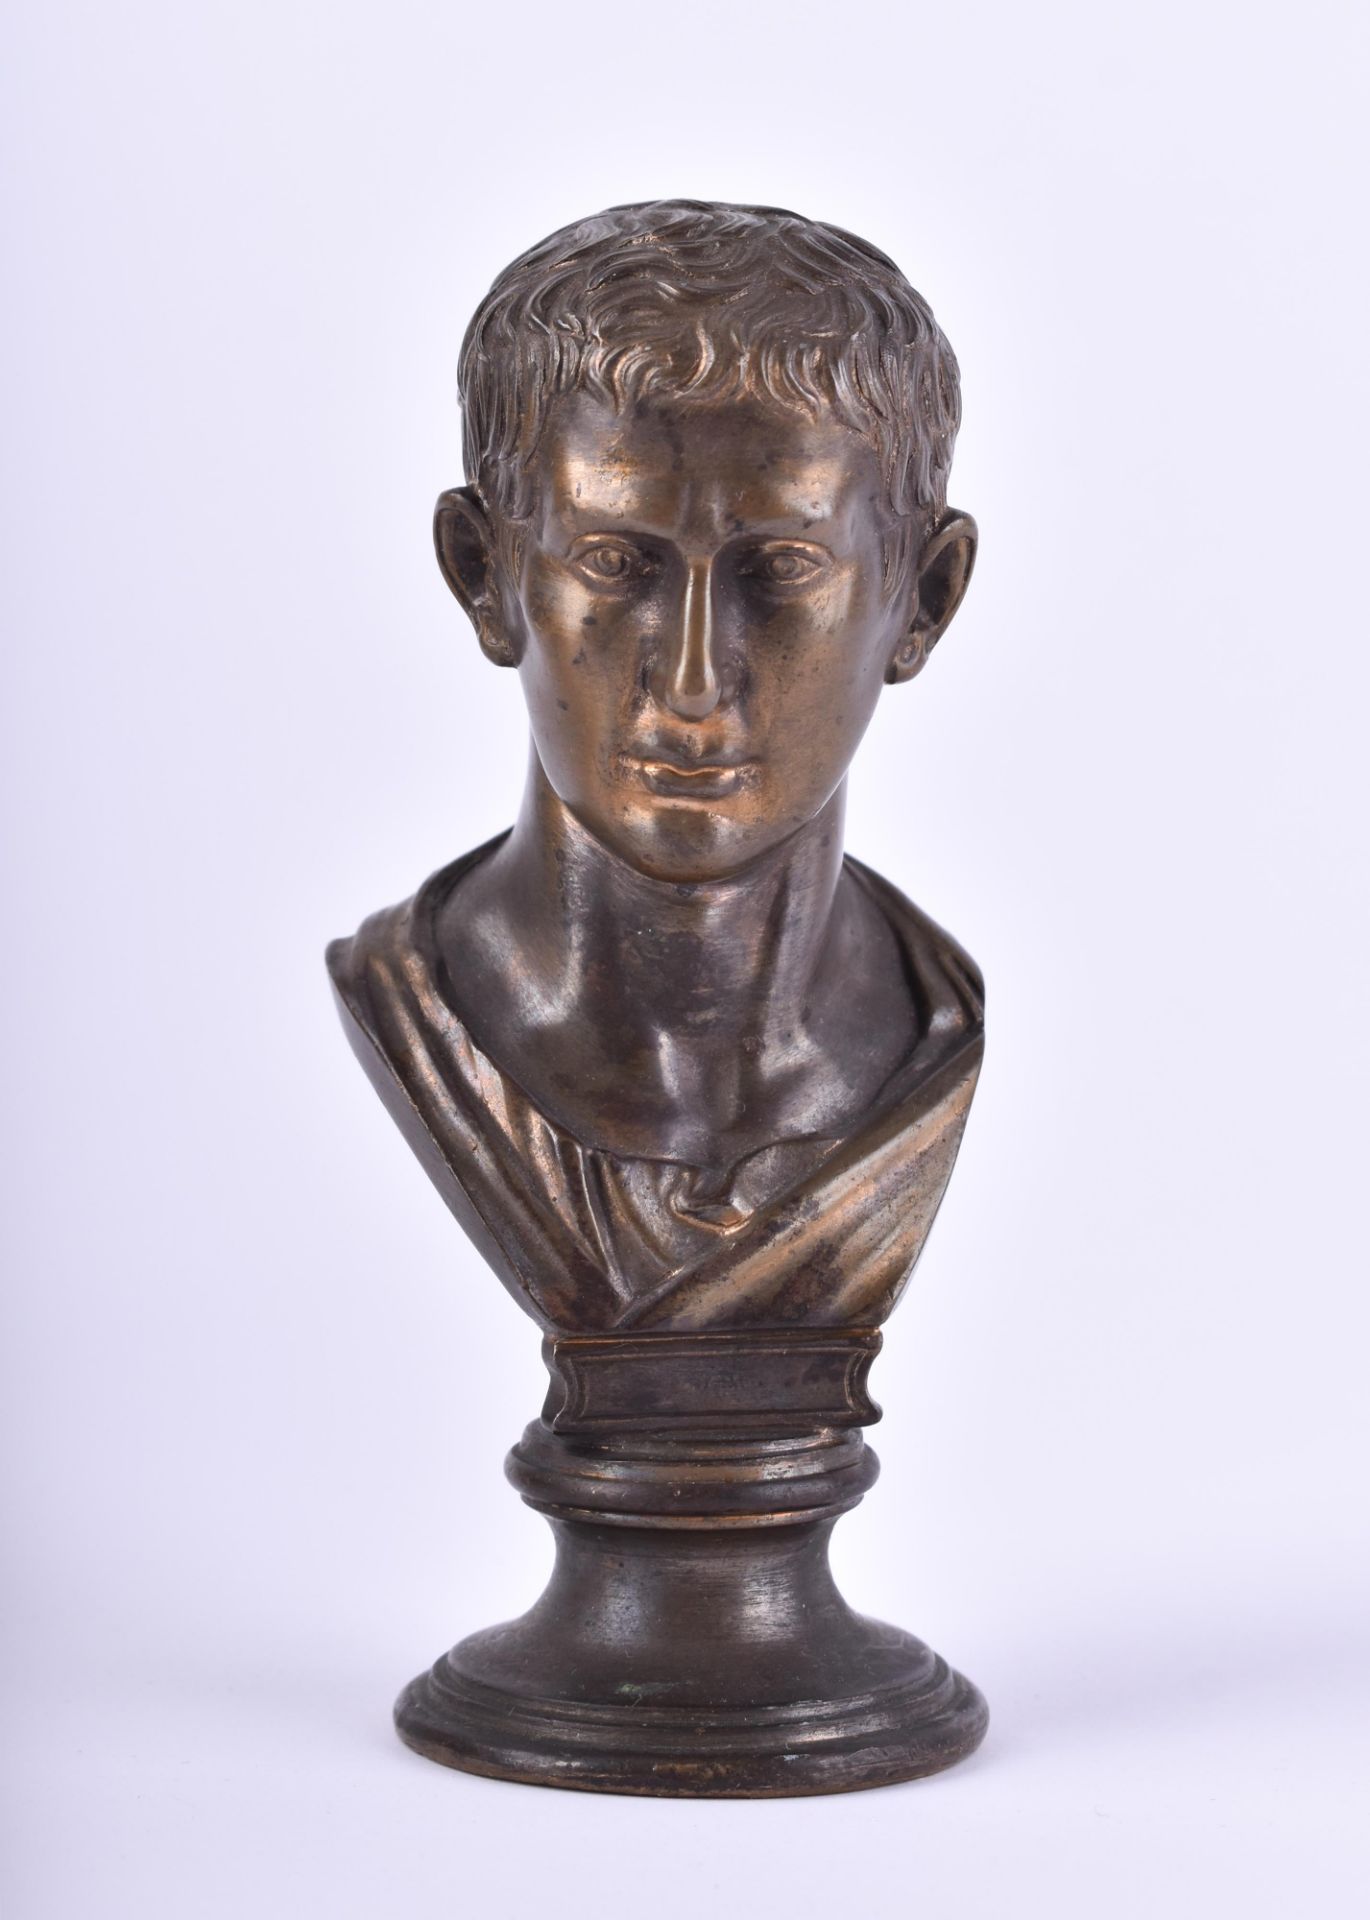  Bronze bust around 1900